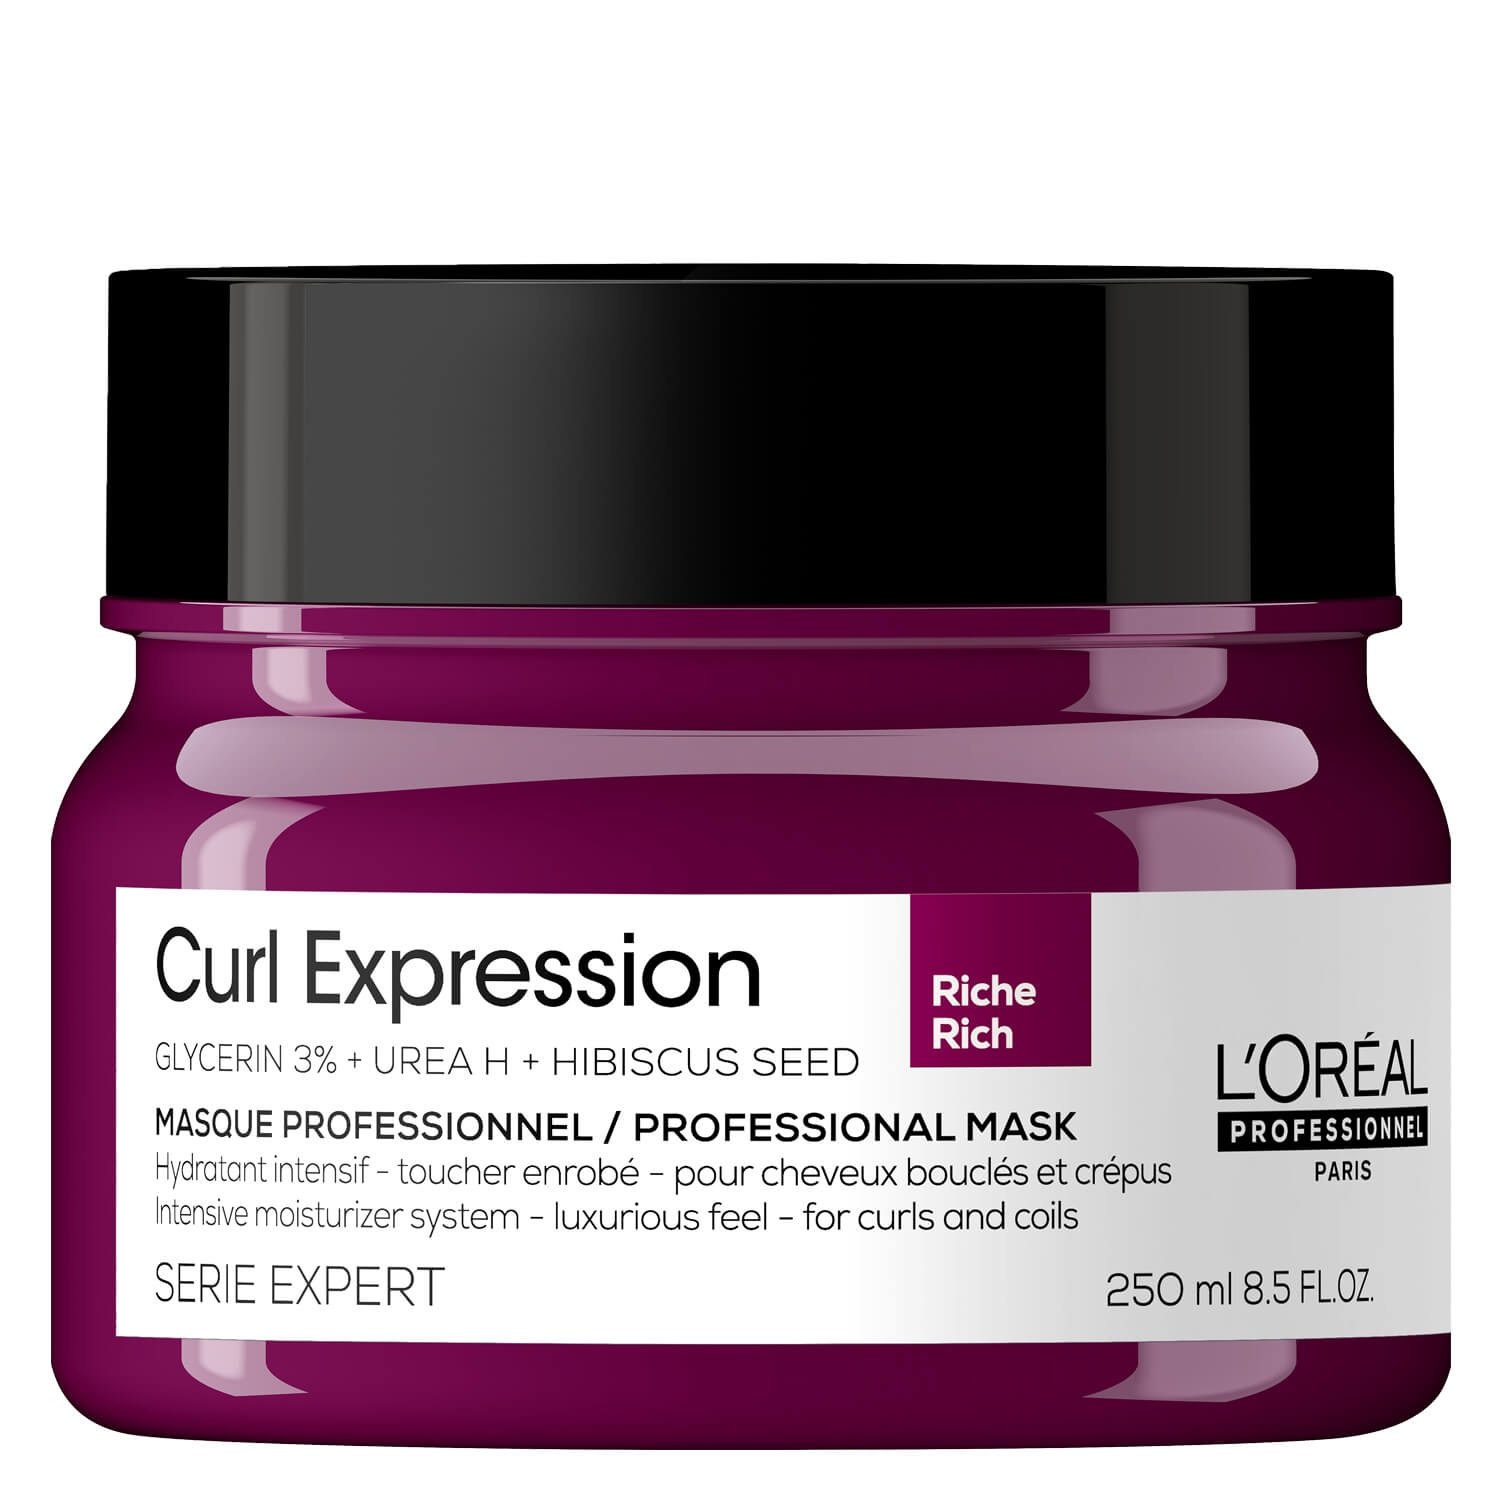 Produktbild von Série Expert Curl Expression - Intensive Moisturizer Rich Mask